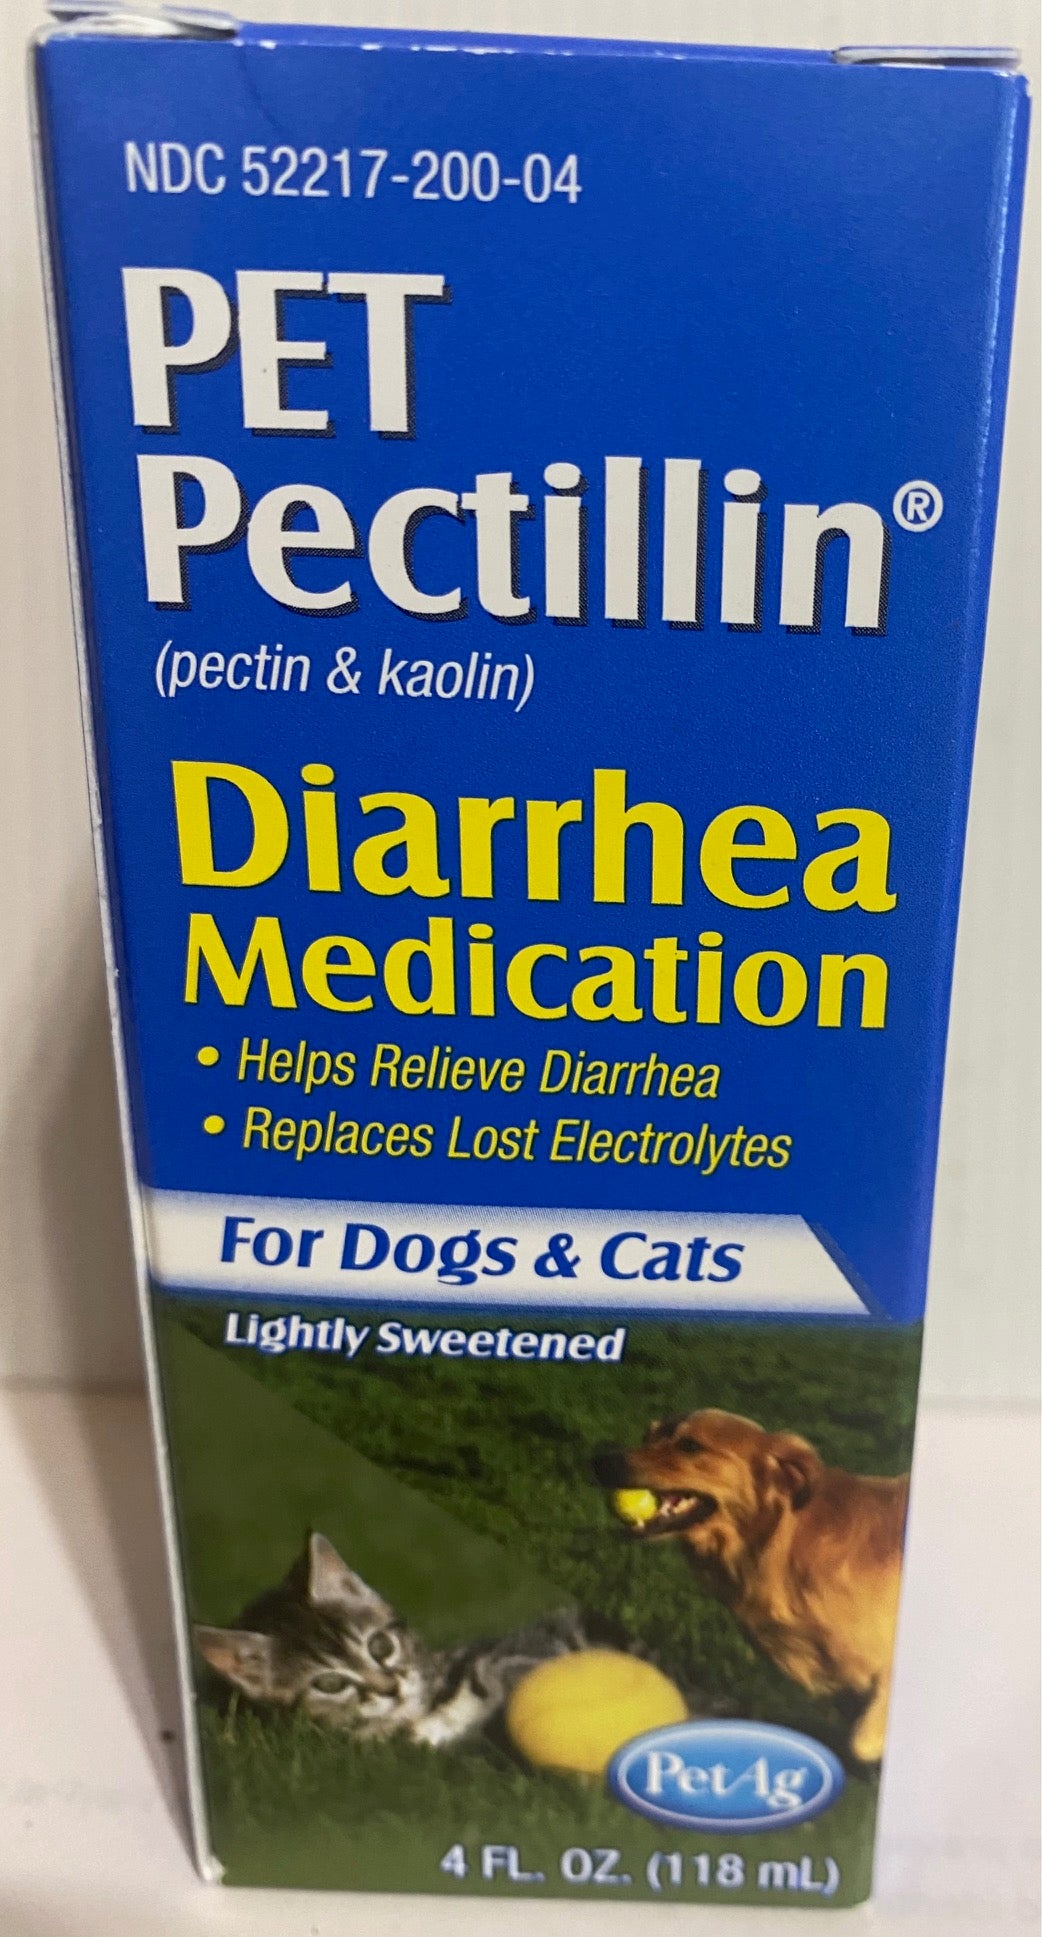 Pet Pectillin Diarrhea Medication - Pet Ag 4 oz